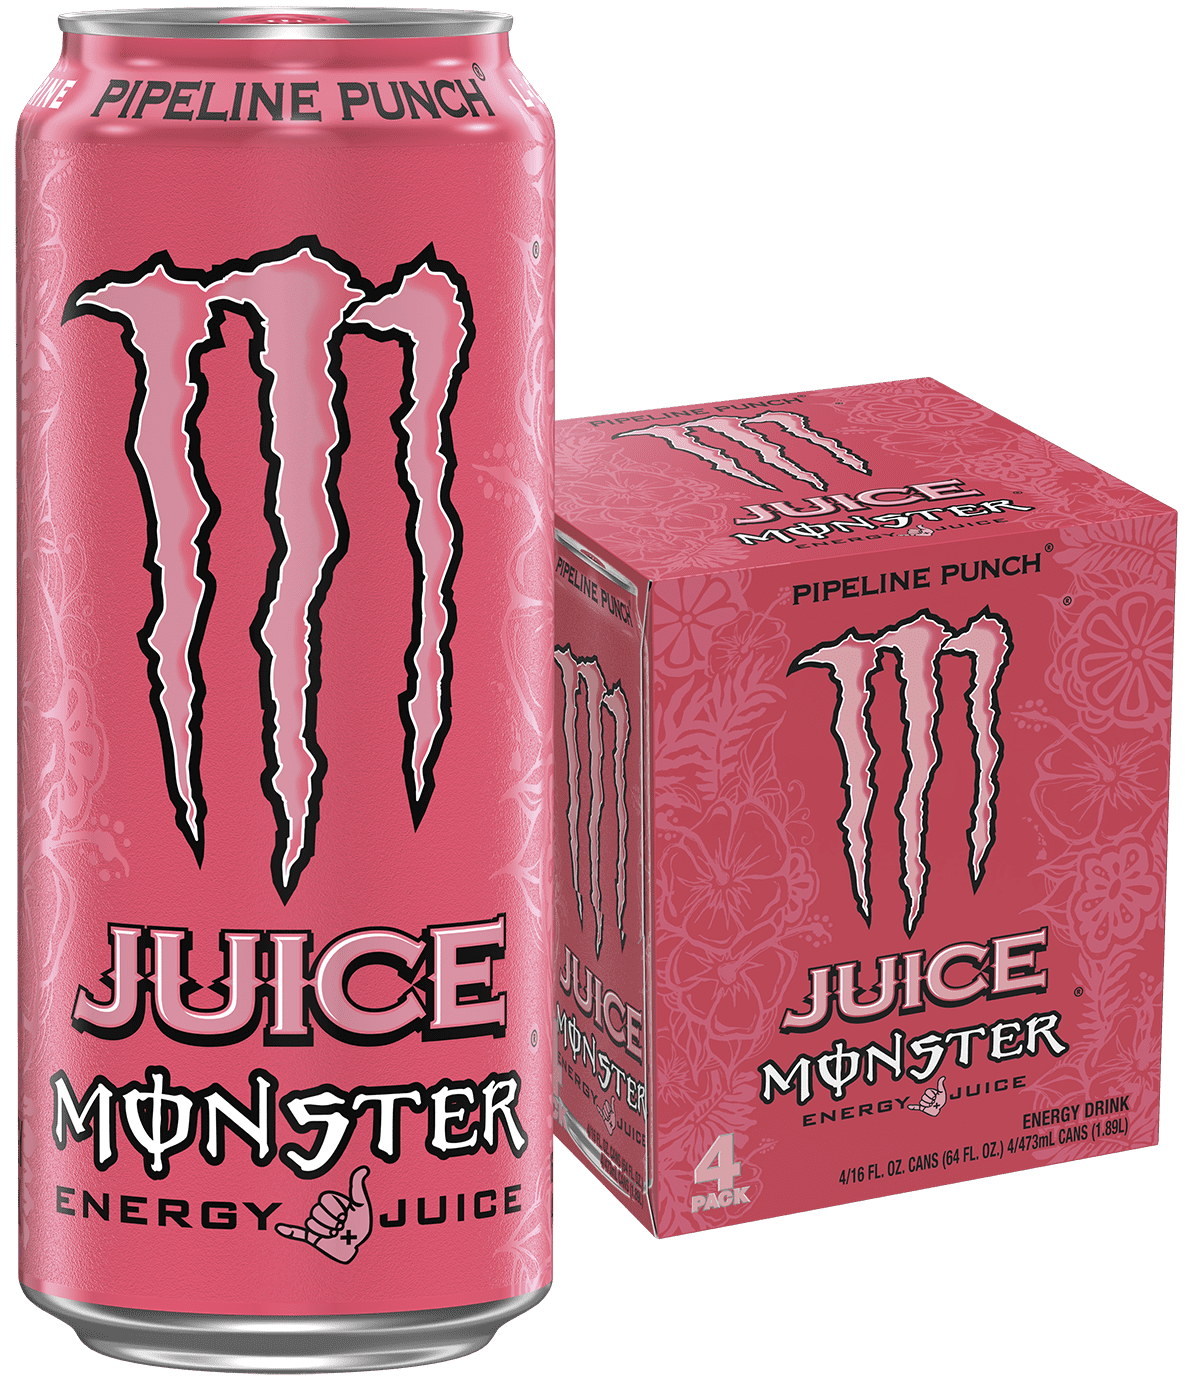 Bạn đang cần một lượng năng lượng đủ để giúp mình hoàn thành công việc? Juice Monster Pipeline Punch là một sự lựa chọn tuyệt vời cho bạn. Với 4 gói đóng chai 16 fl oz cùng với hình nền động Monster Energy hồng, sản phẩm này không chỉ giúp bạn sáng tạo và năng động, mà còn giúp bạn giải khát và thư giãn.